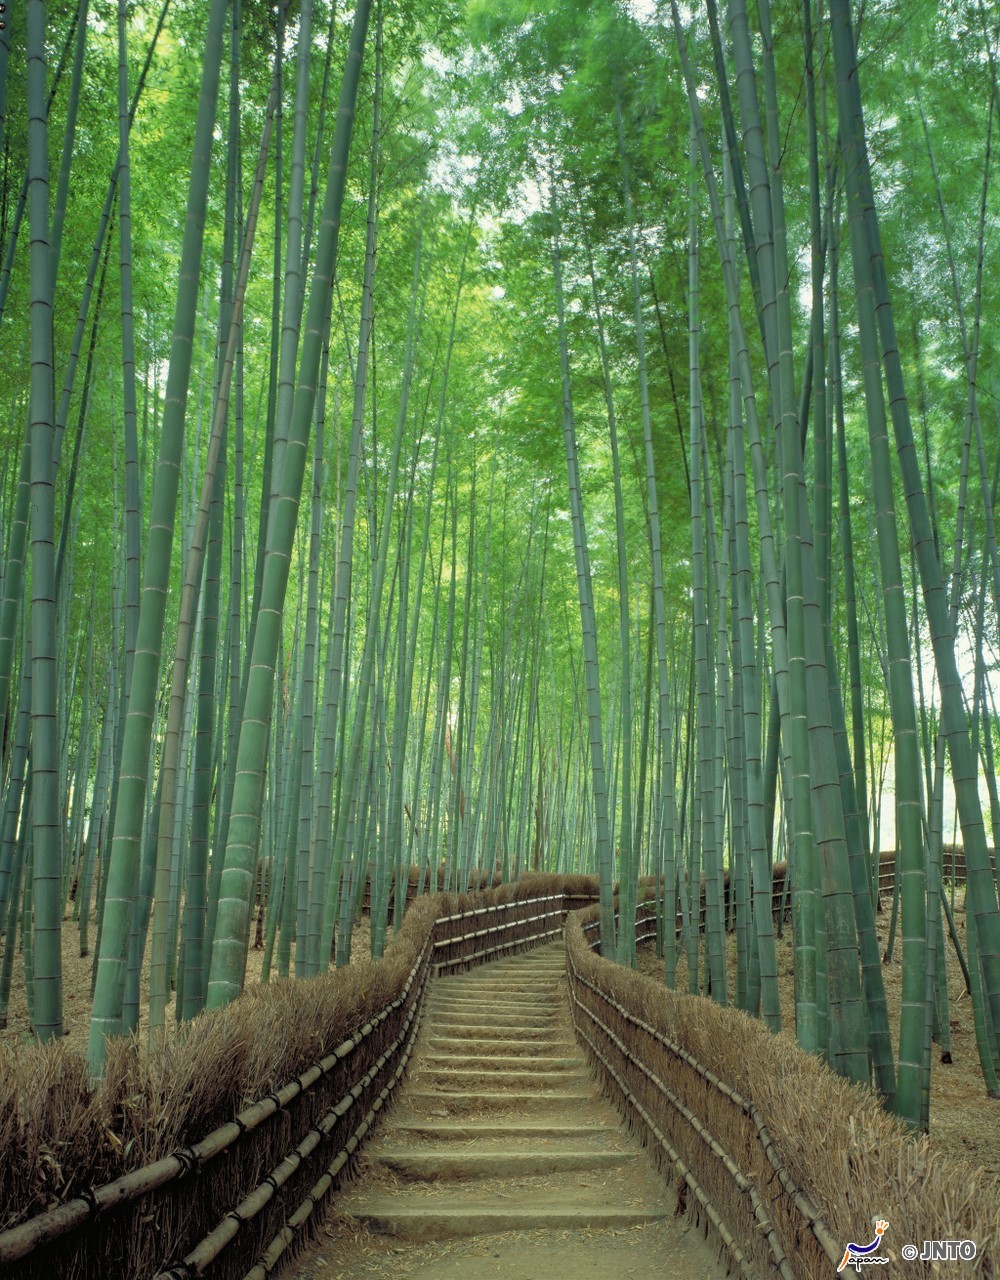 Sagano Bamboo Grove